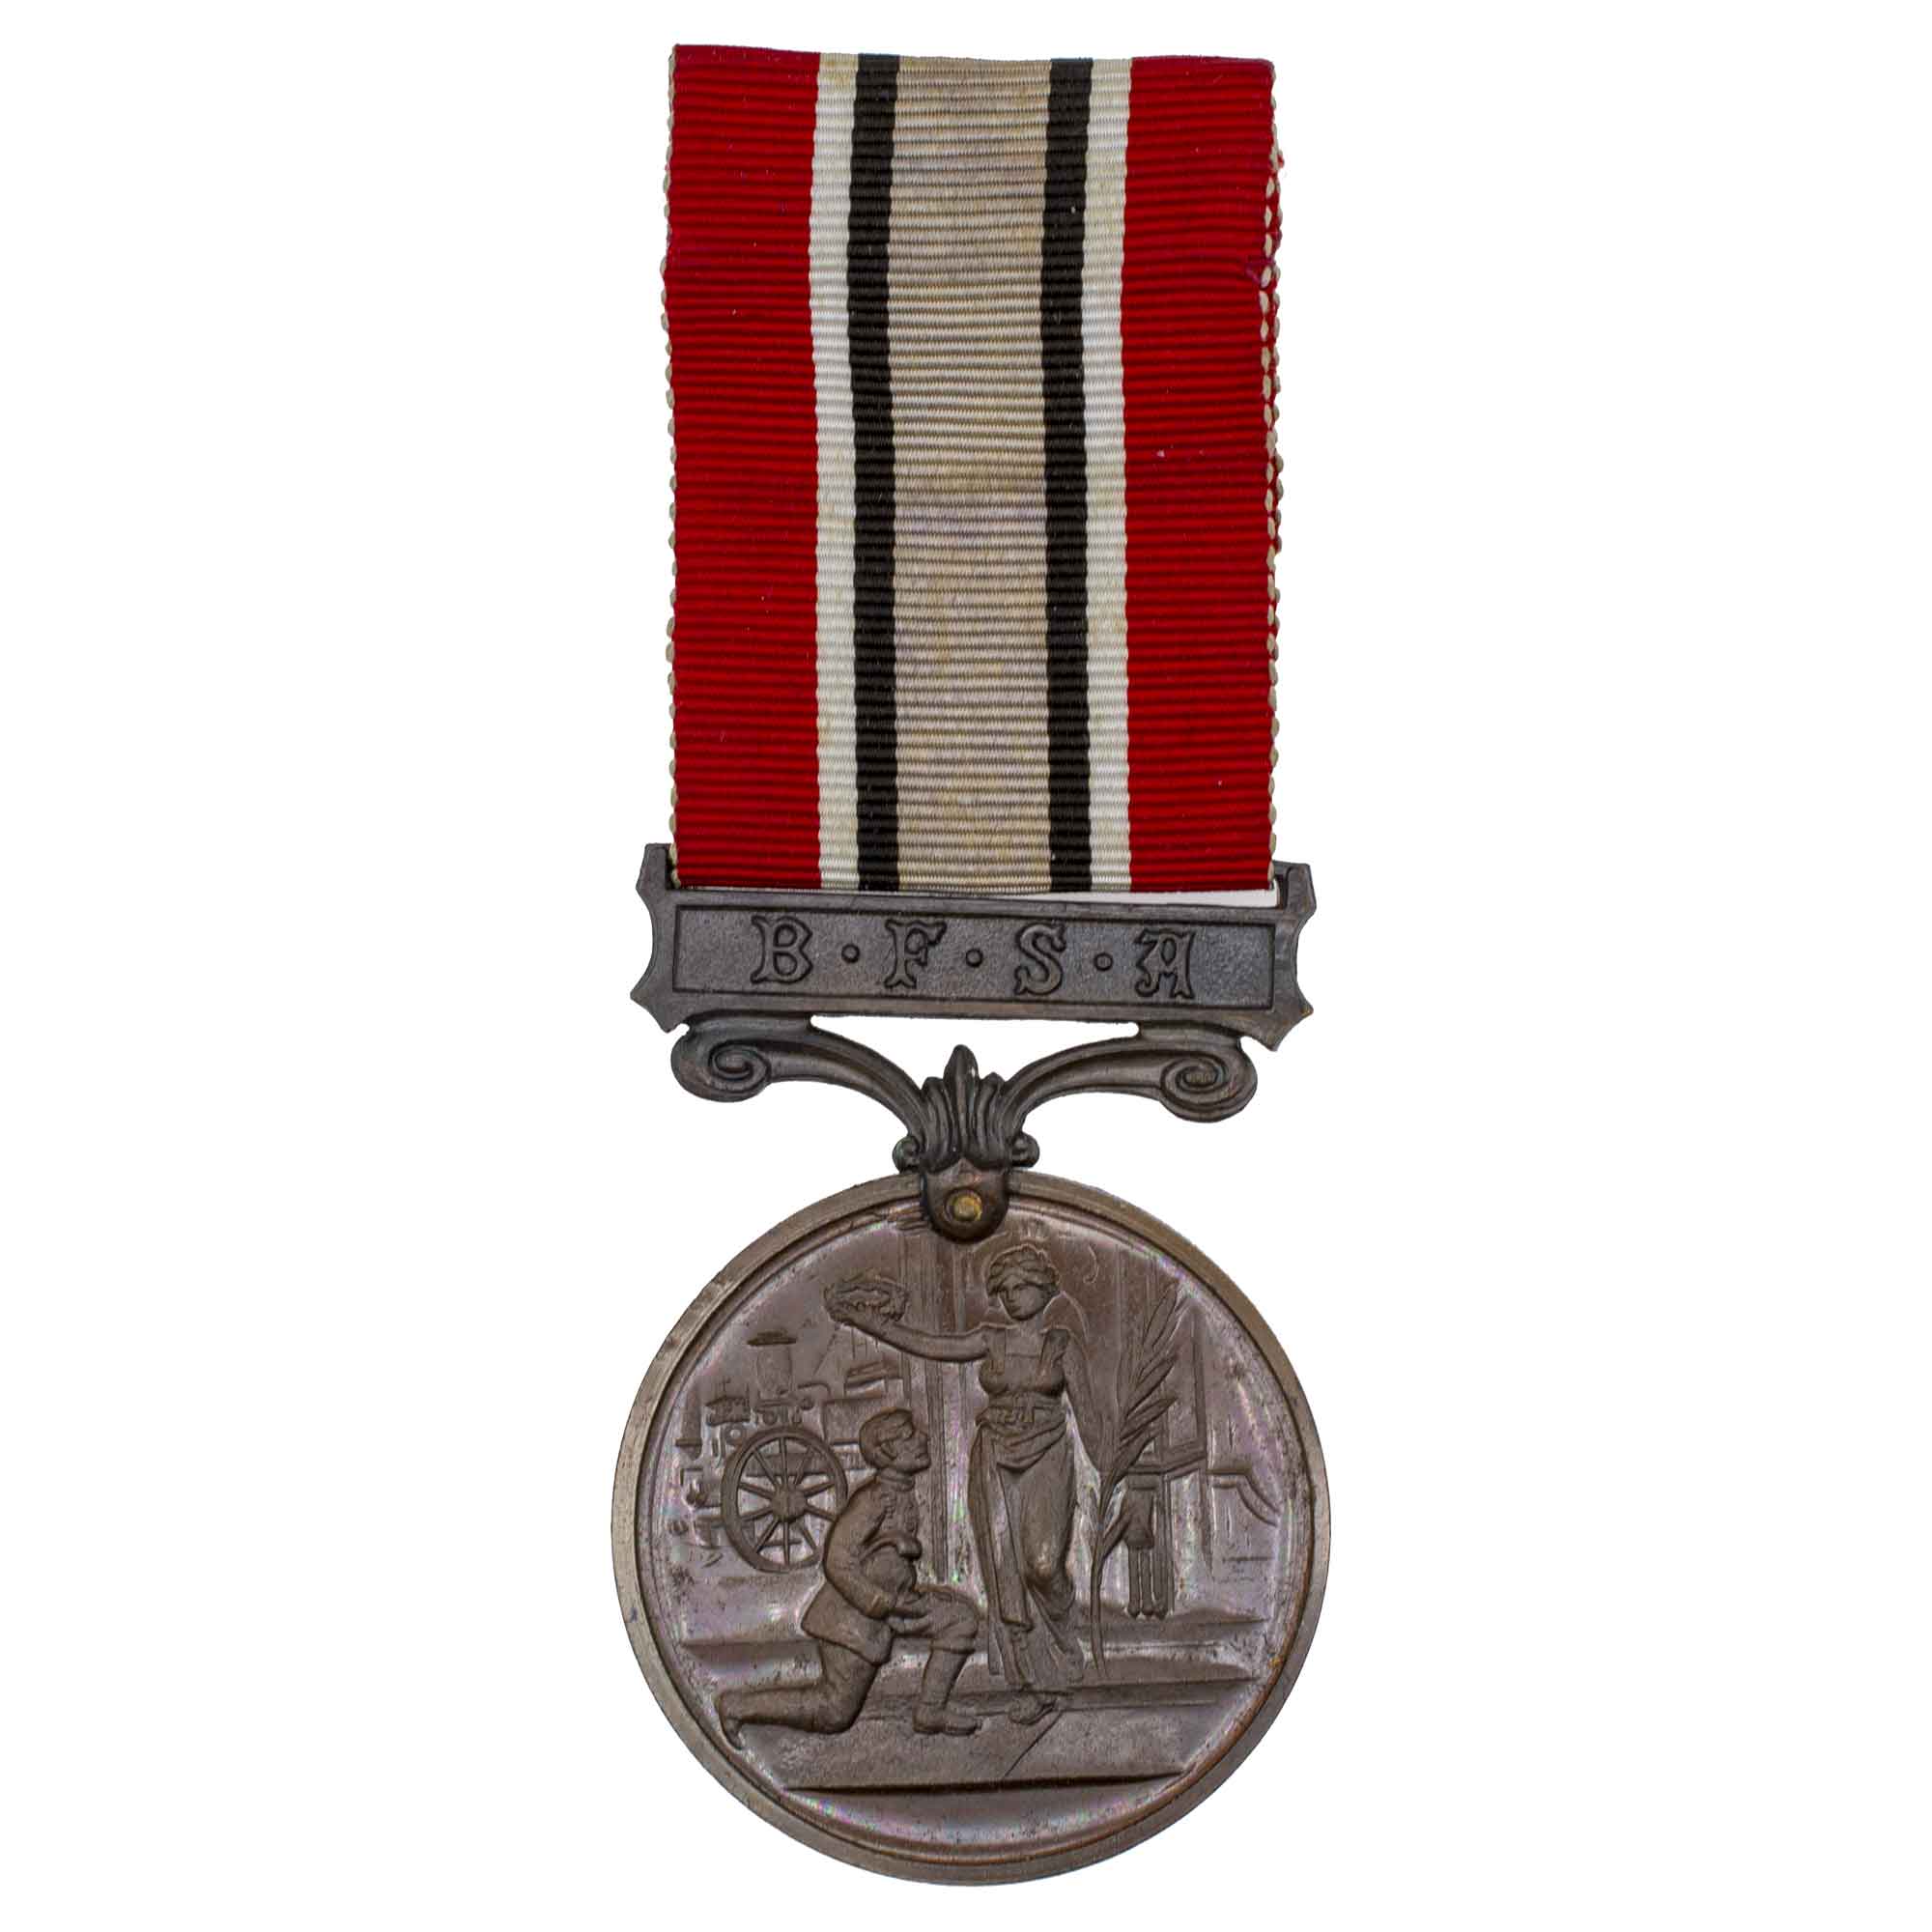 Великобритания. Медаль за выслугу лет Британской ассоциации пожарной охраны "BFSA".